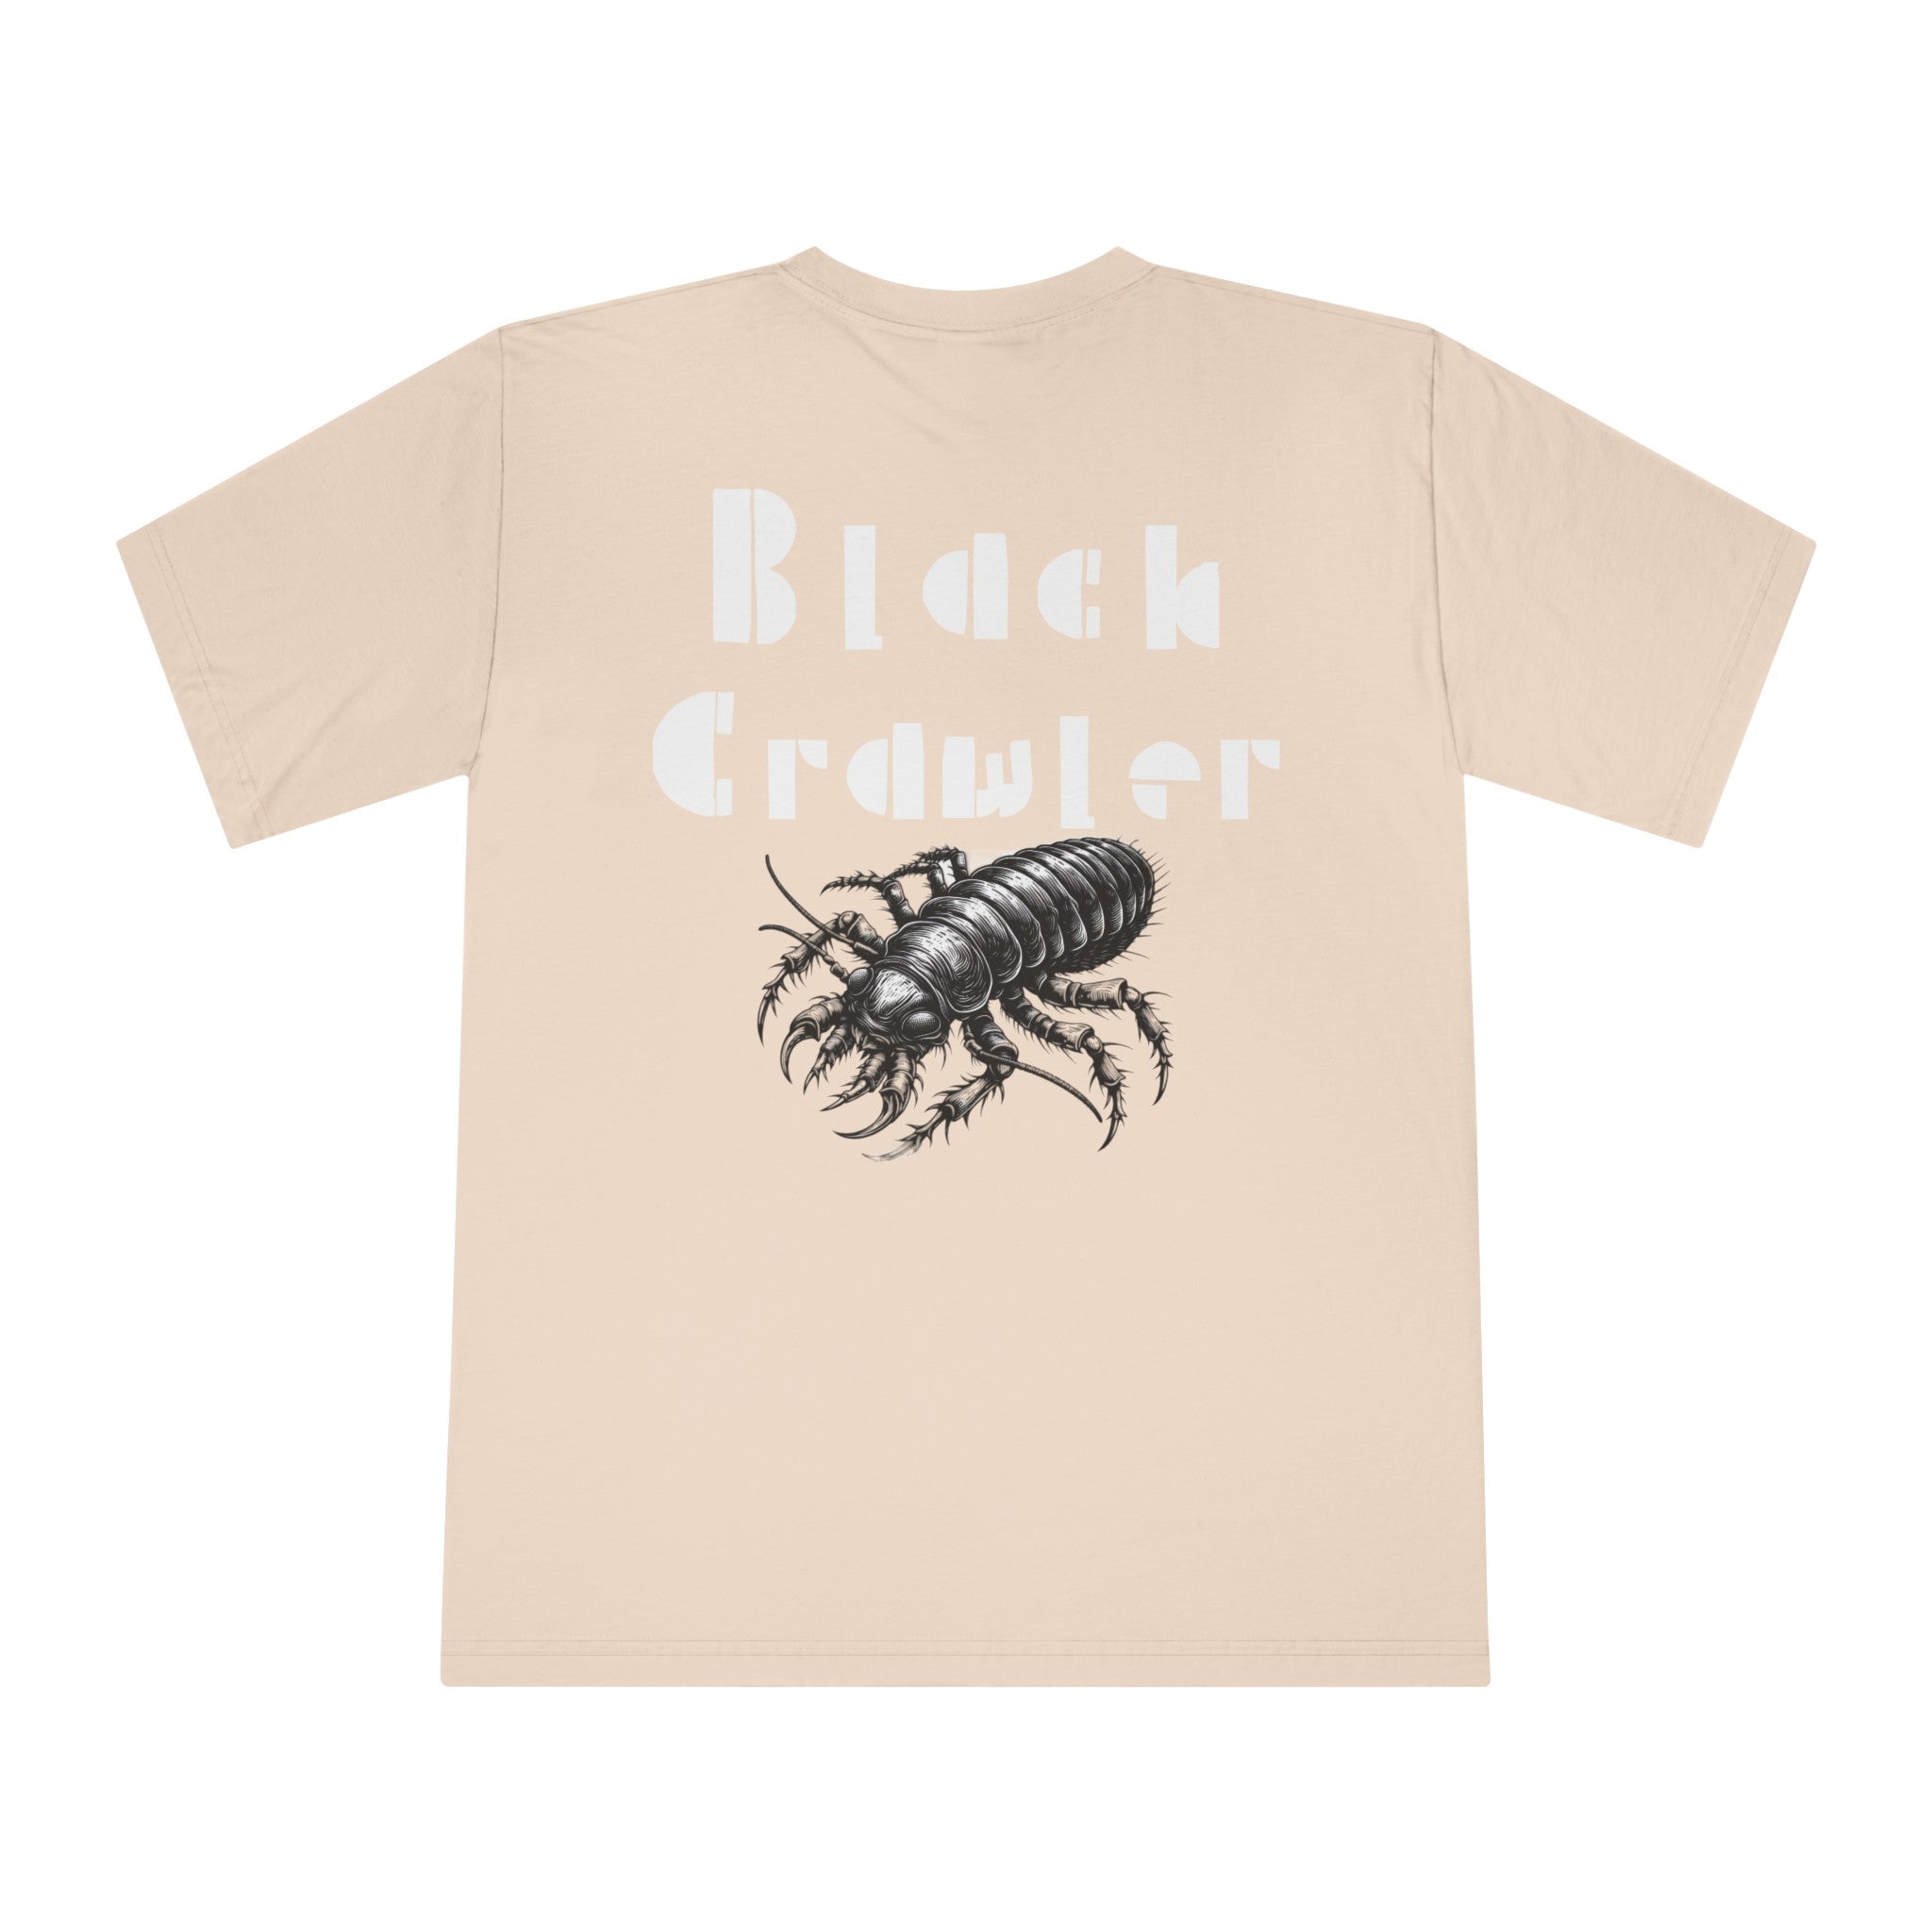 Creepy crawler Black Crawler T-Shirt